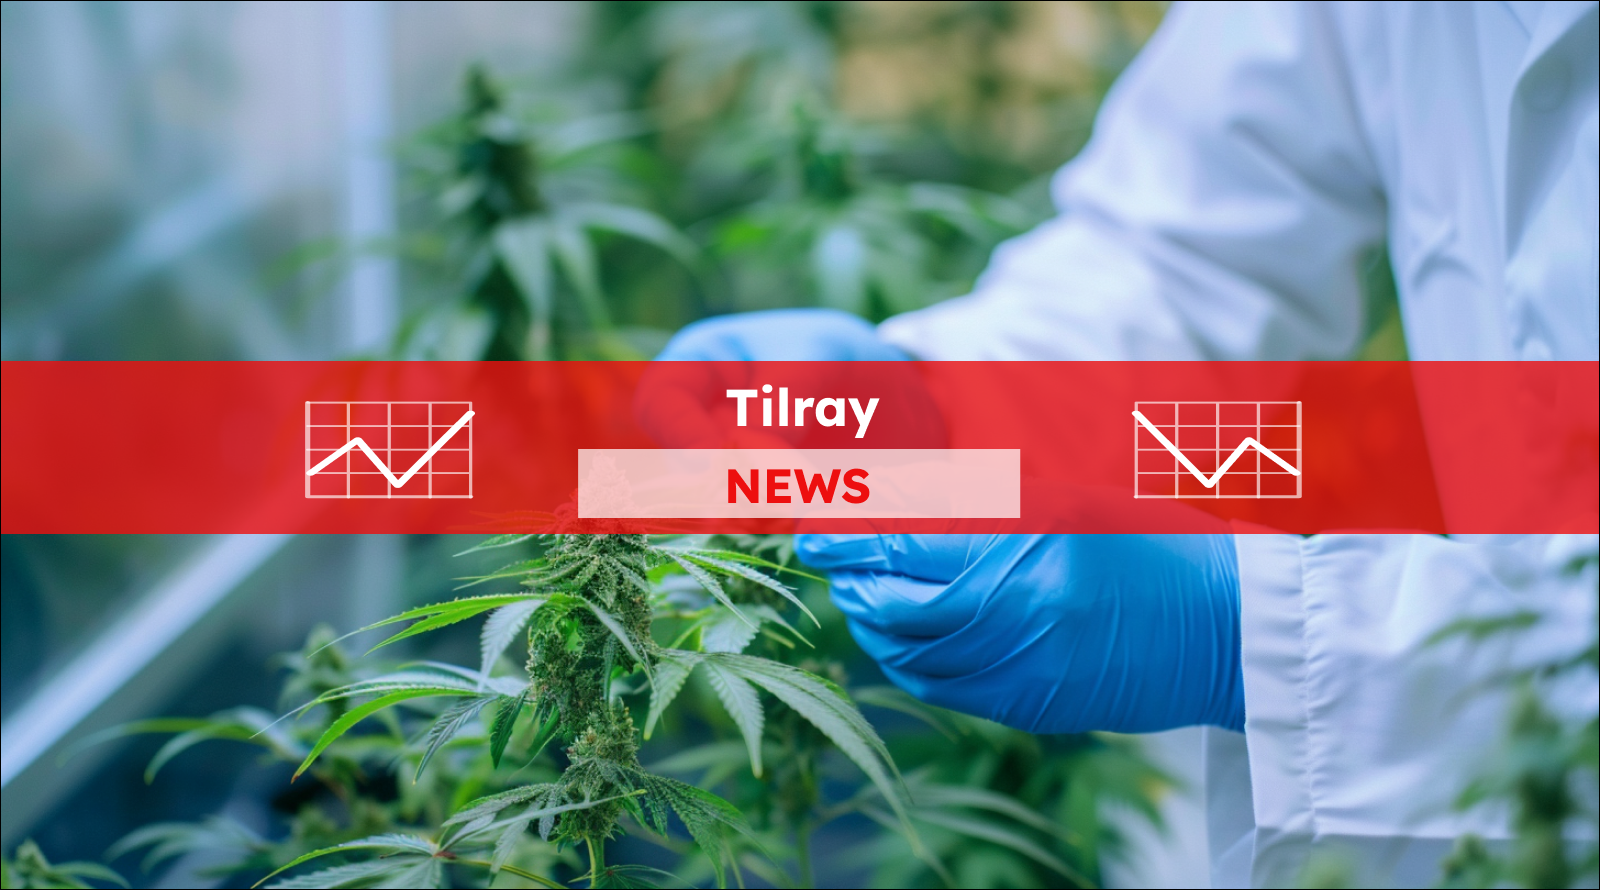 Ein Wissenschaftler nimmt Cannabisblätter zur Untersuchung im Labor, mit einem Tilray NEWS Banner.